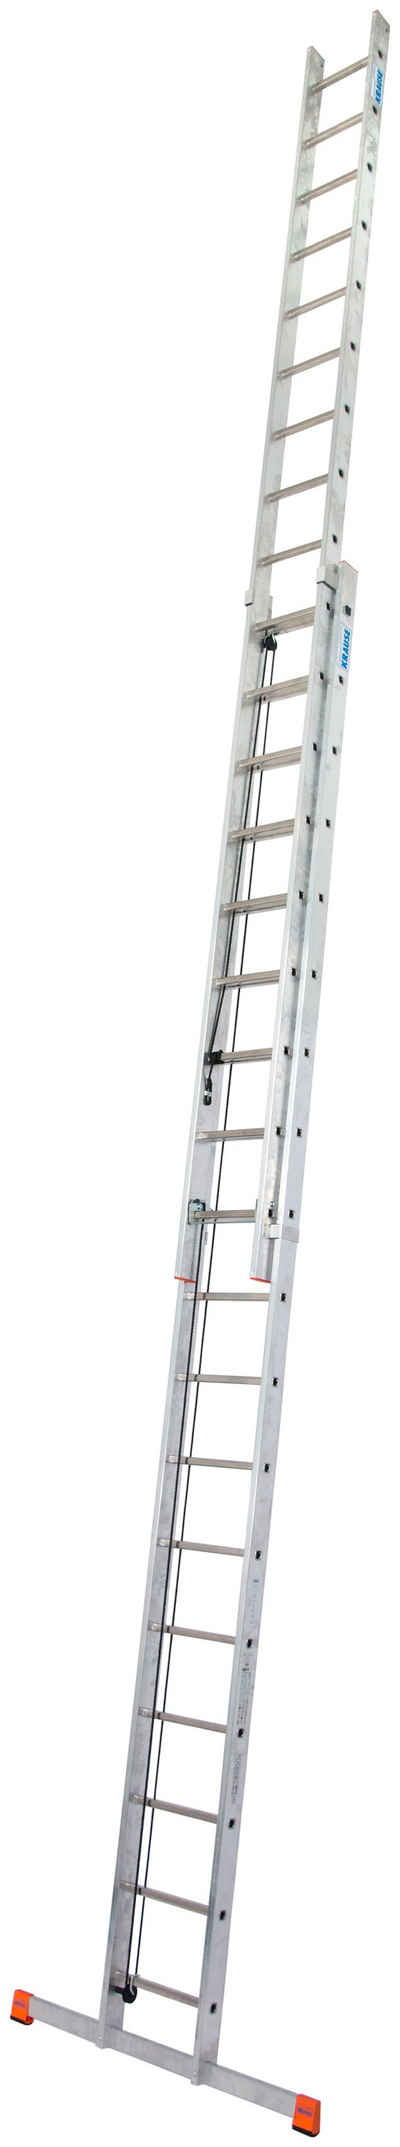 KRAUSE Schiebeleiter »Seilzugleiter Robilo«, Alu, 2x18 Sprossen, Arbeitshöhe ca. 980 cm